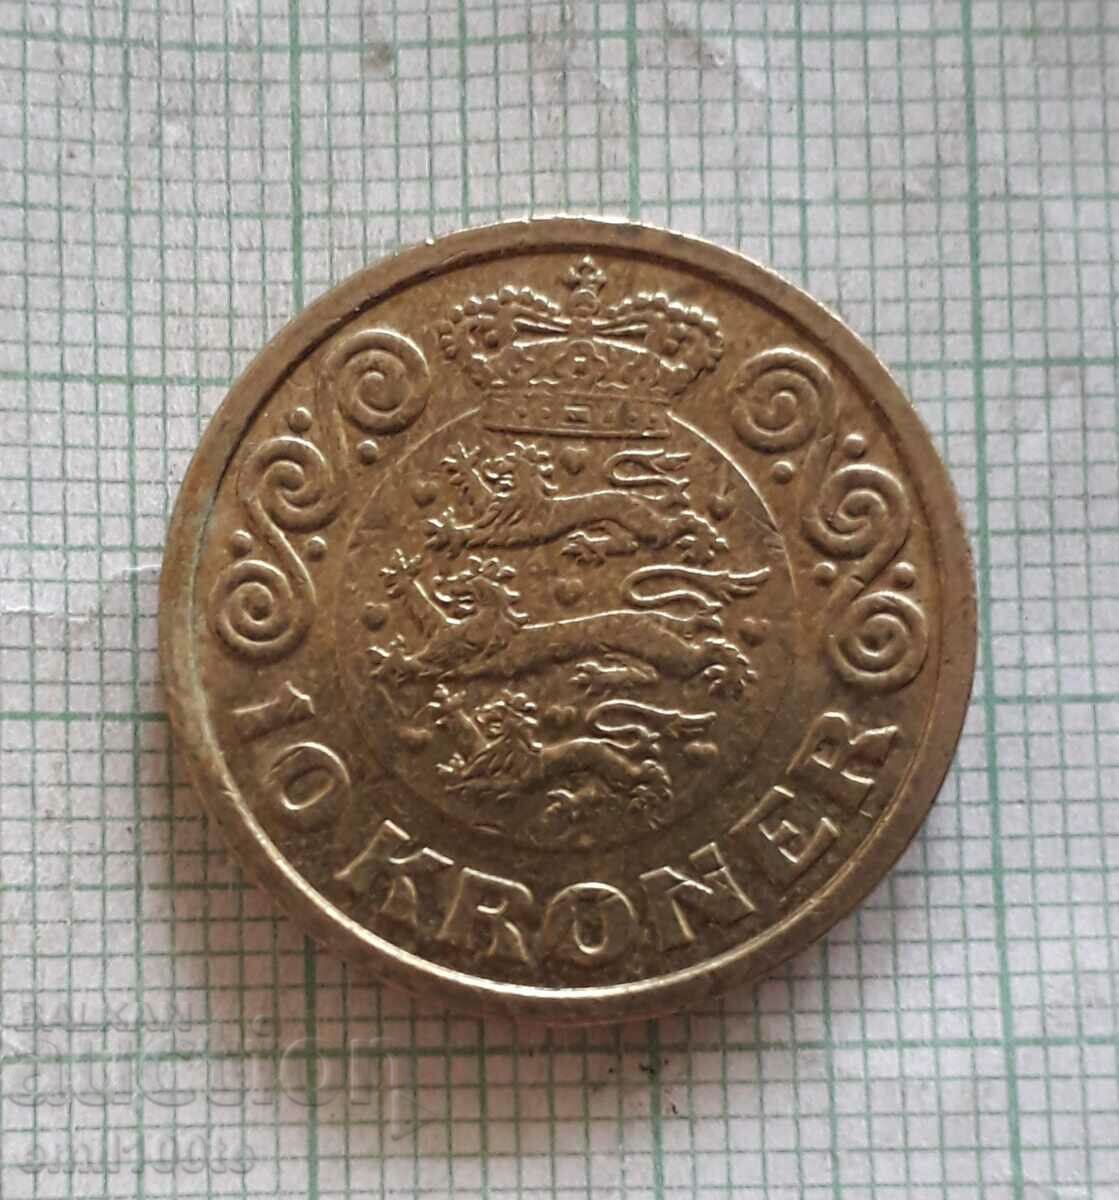 10 kroner 2017. Denmark